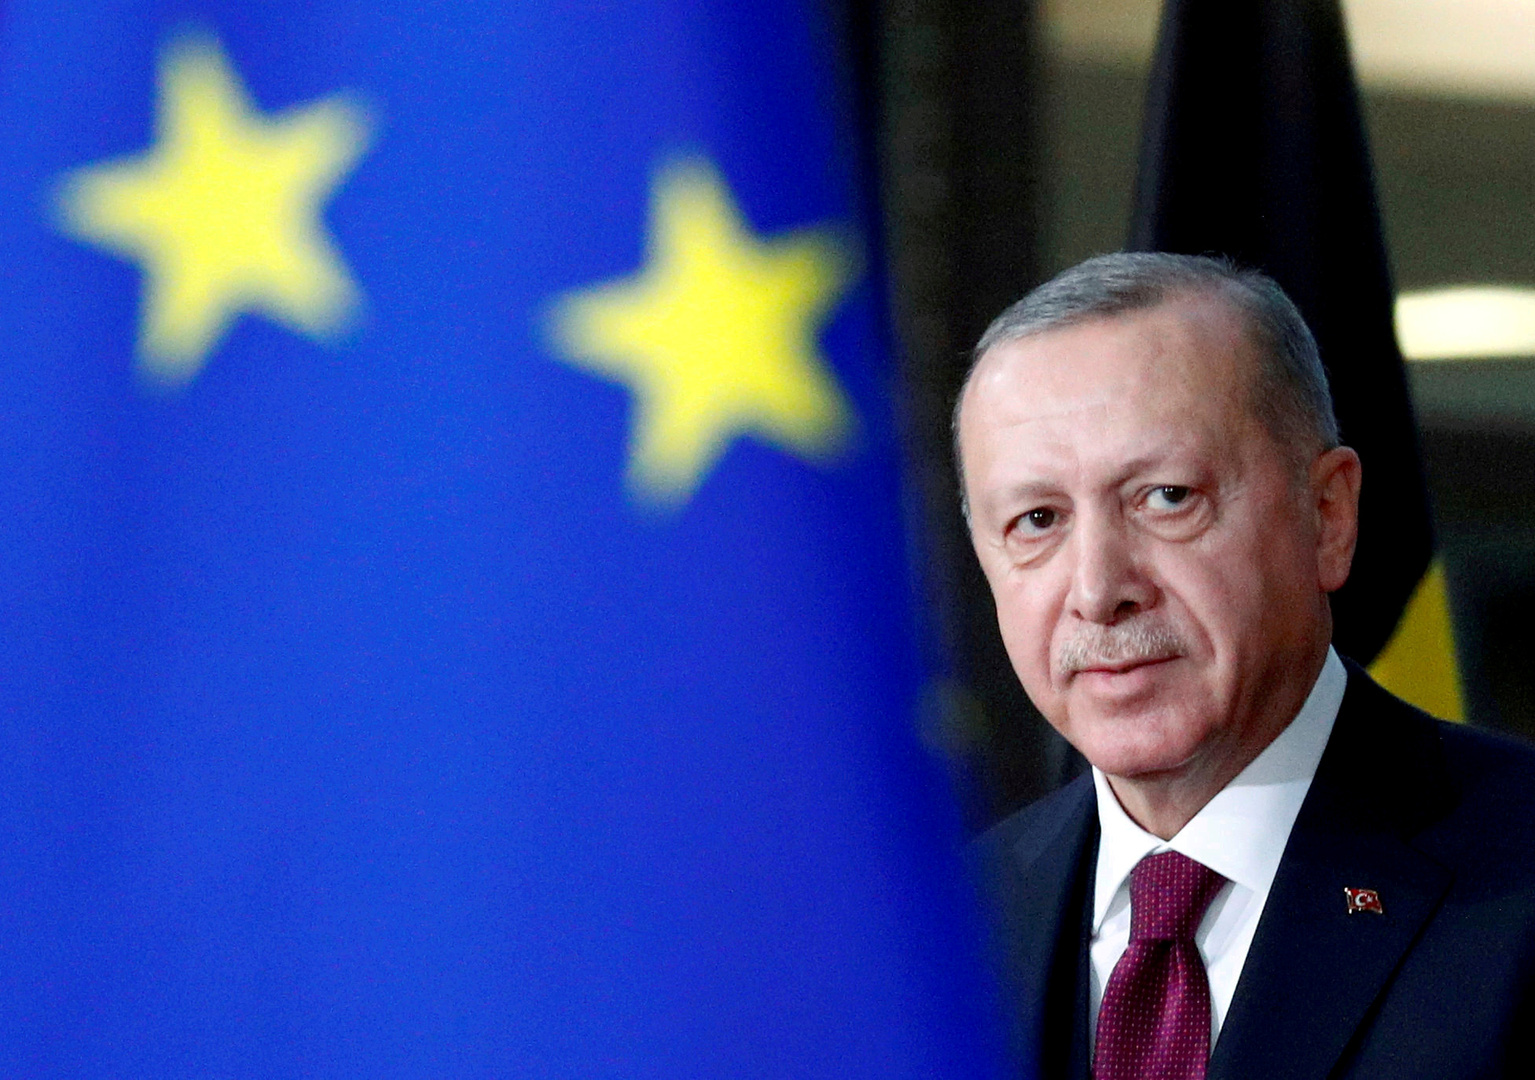 خبير يوضح إعلان أردوغان عن ضرورة ضم تركيا إلى الاتحاد الأوروبي بعد خروج بريطانيا